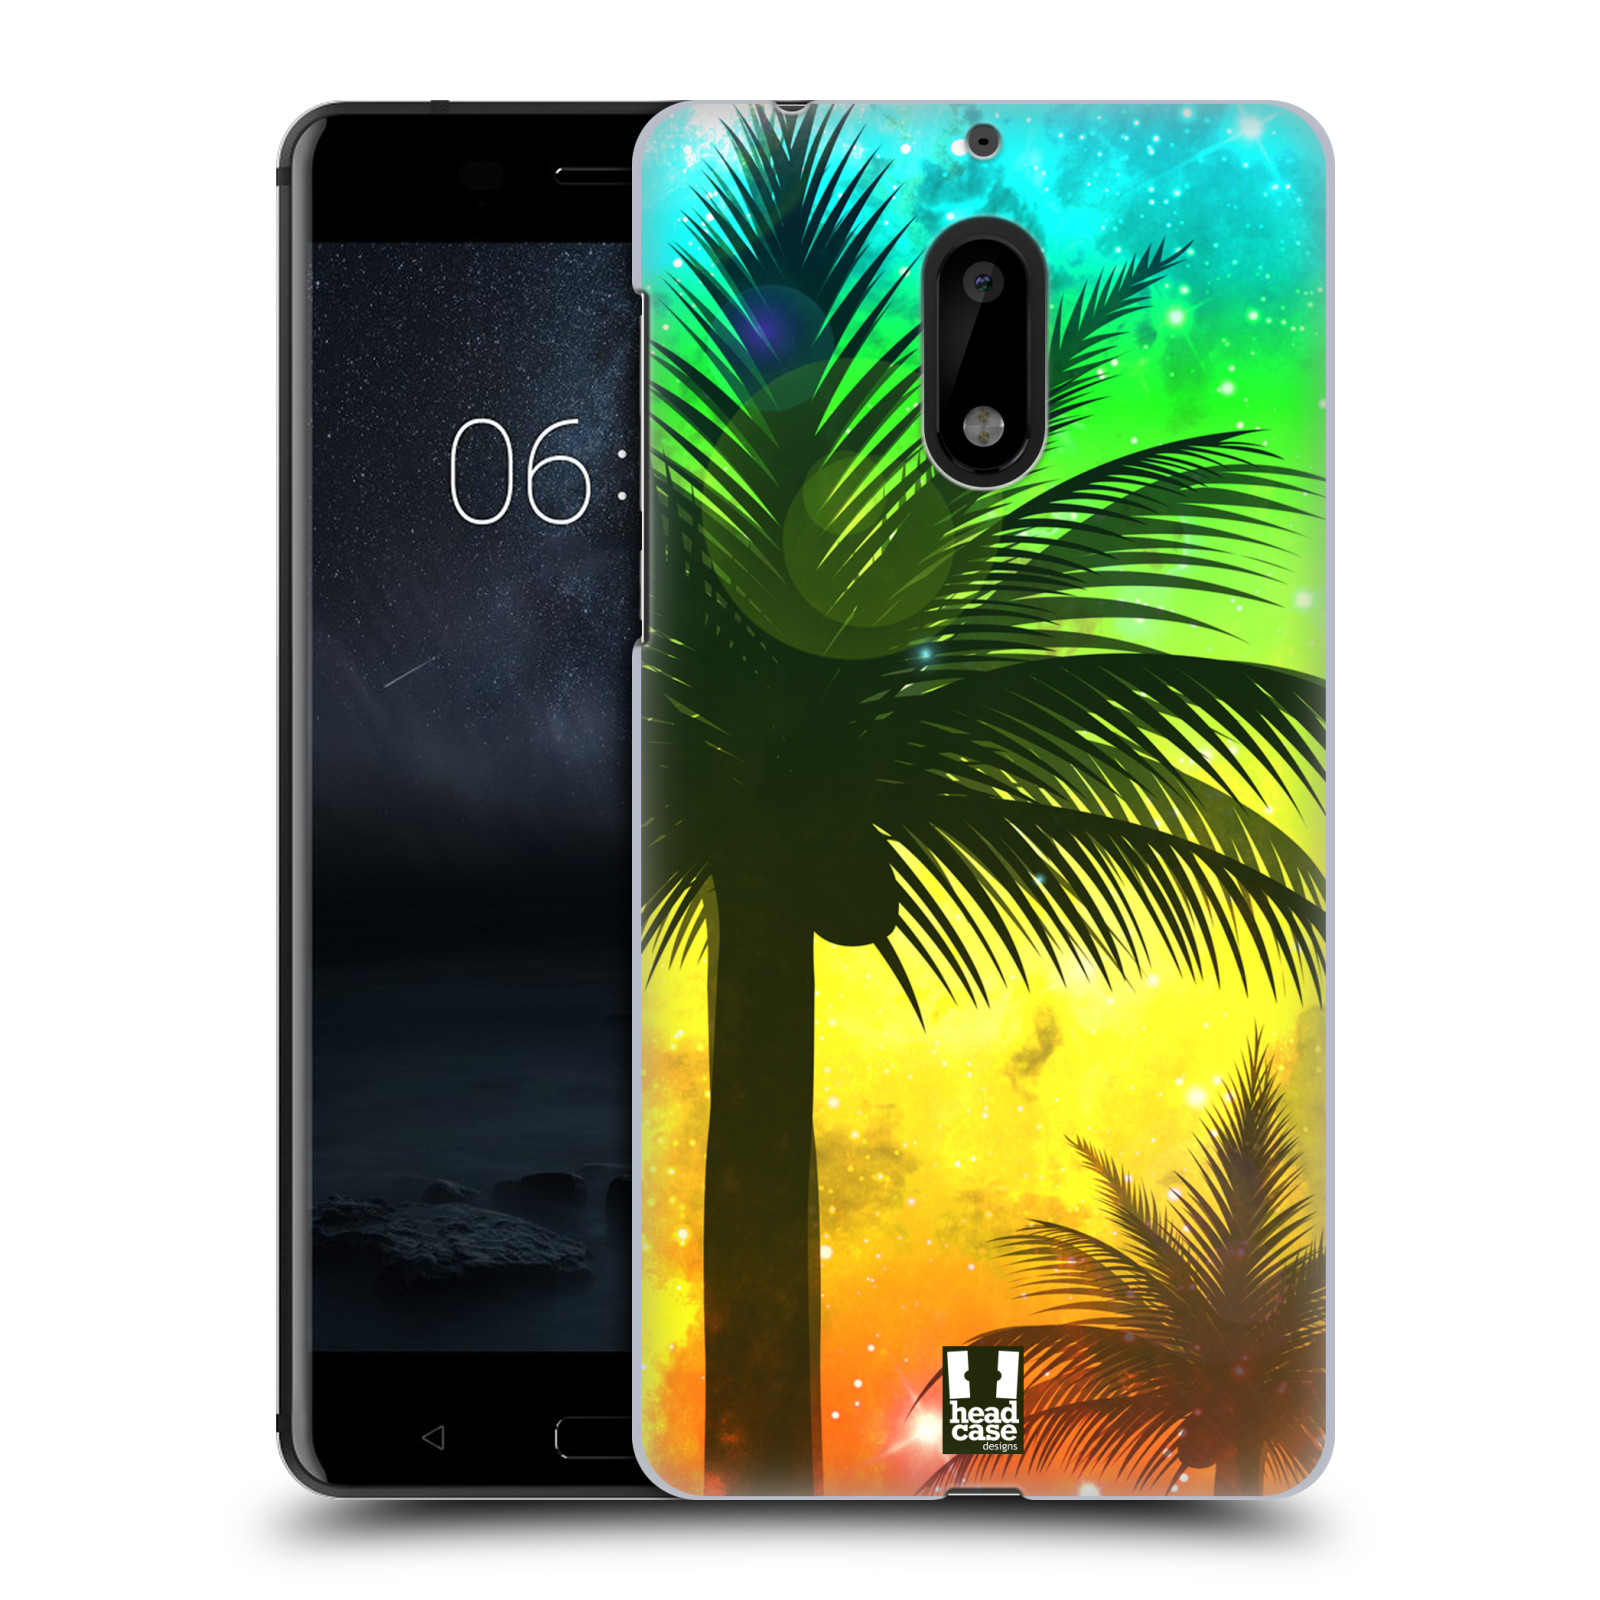 HEAD CASE plastový obal na mobil Nokia 6 vzor Kreslený motiv silueta moře a palmy ZELENÁ A ORANŽOVÁ